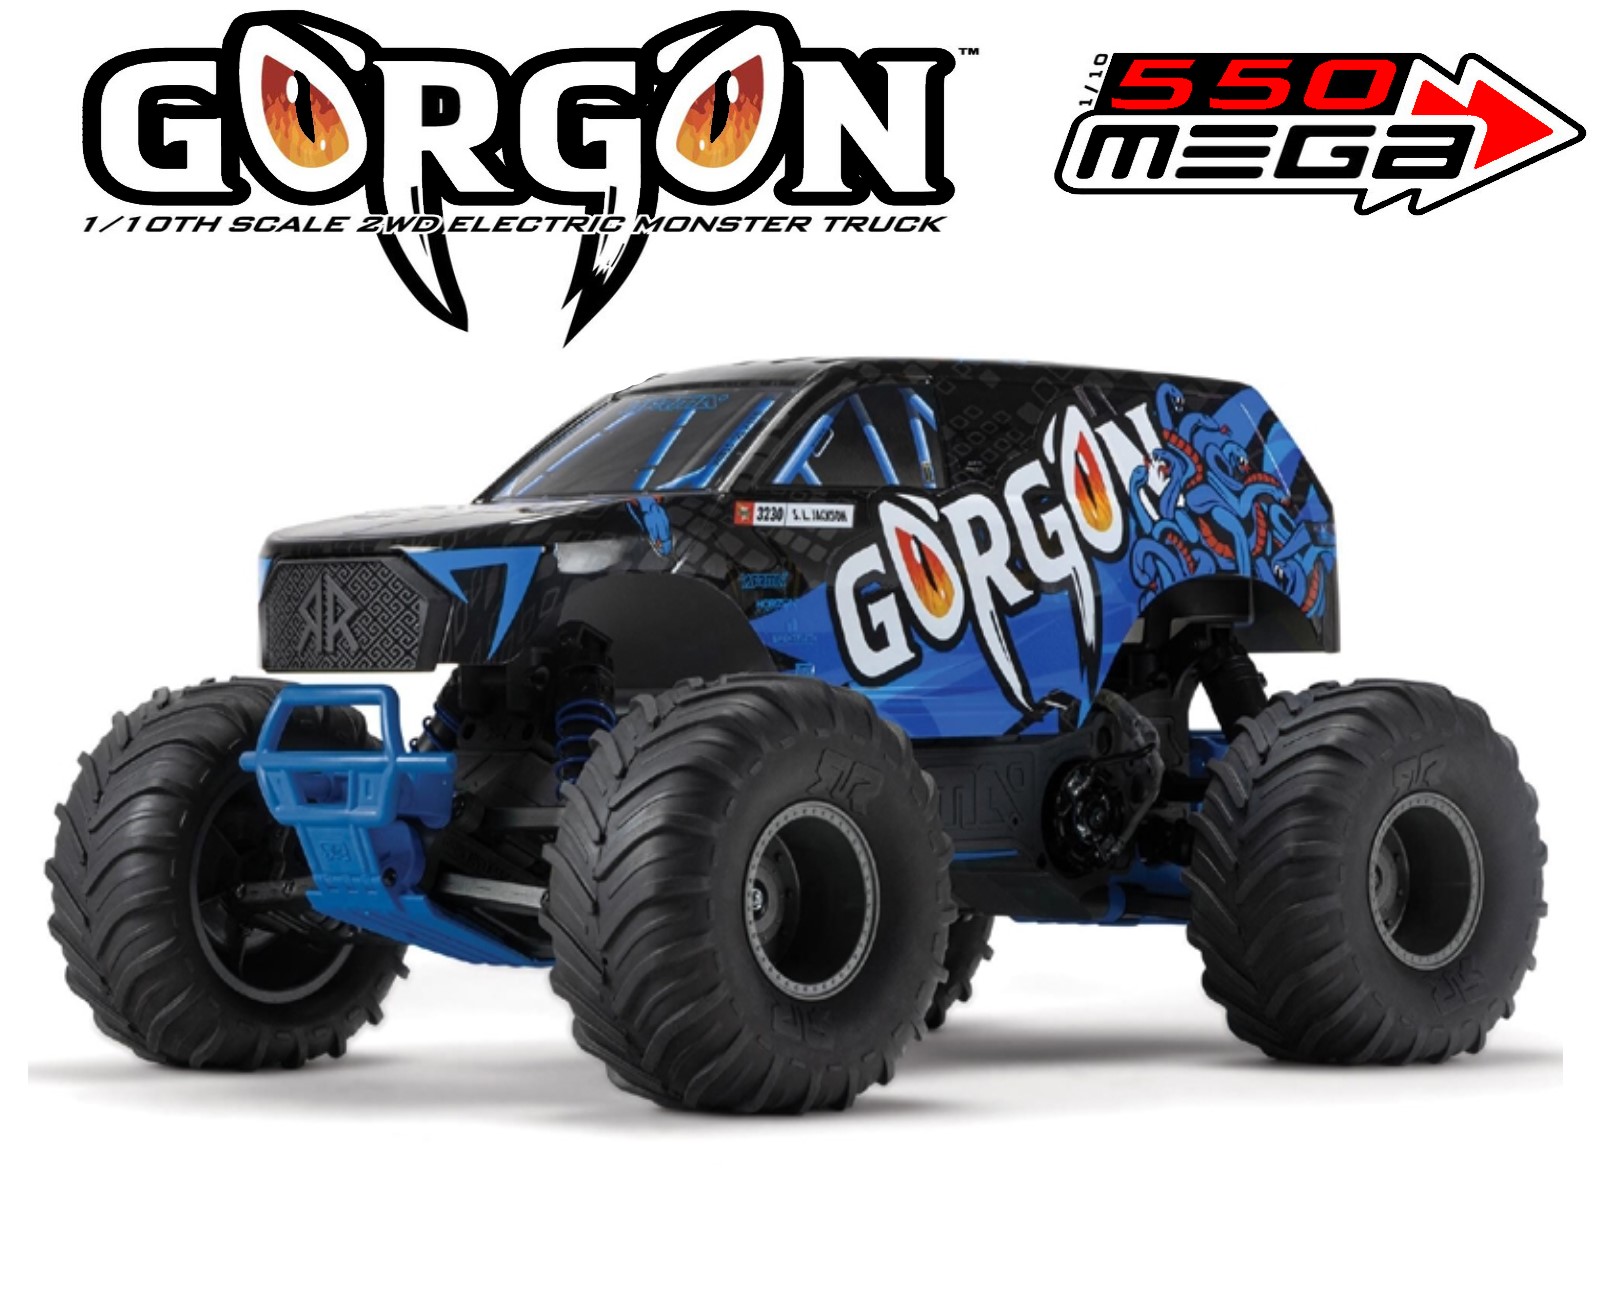 GORGON MEGA 550 2WD